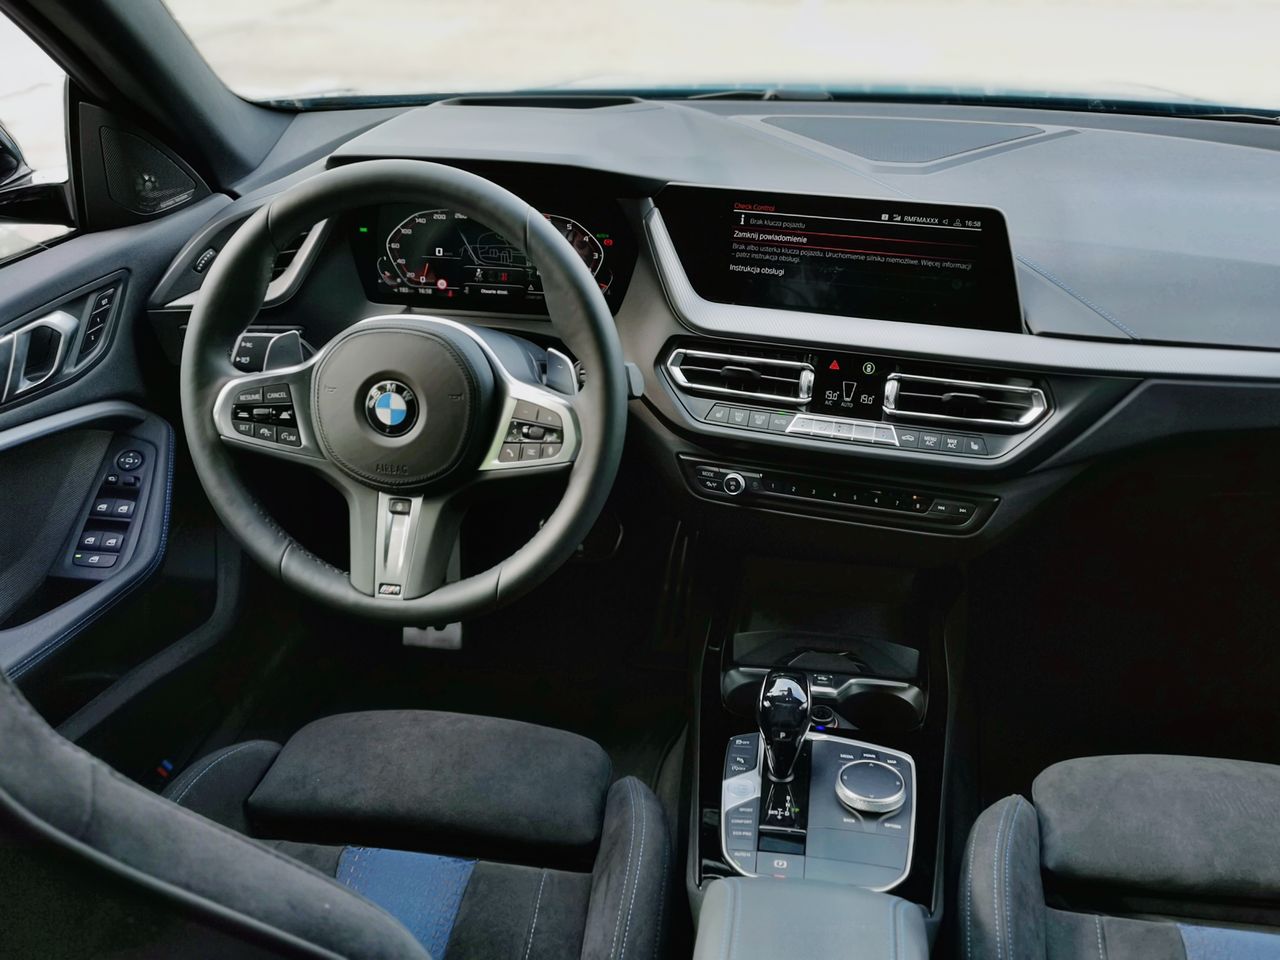 BMW M235i Gran Coupe: Aplikacja BMW Connected, system info-rozrywki i audio Harman Kardon